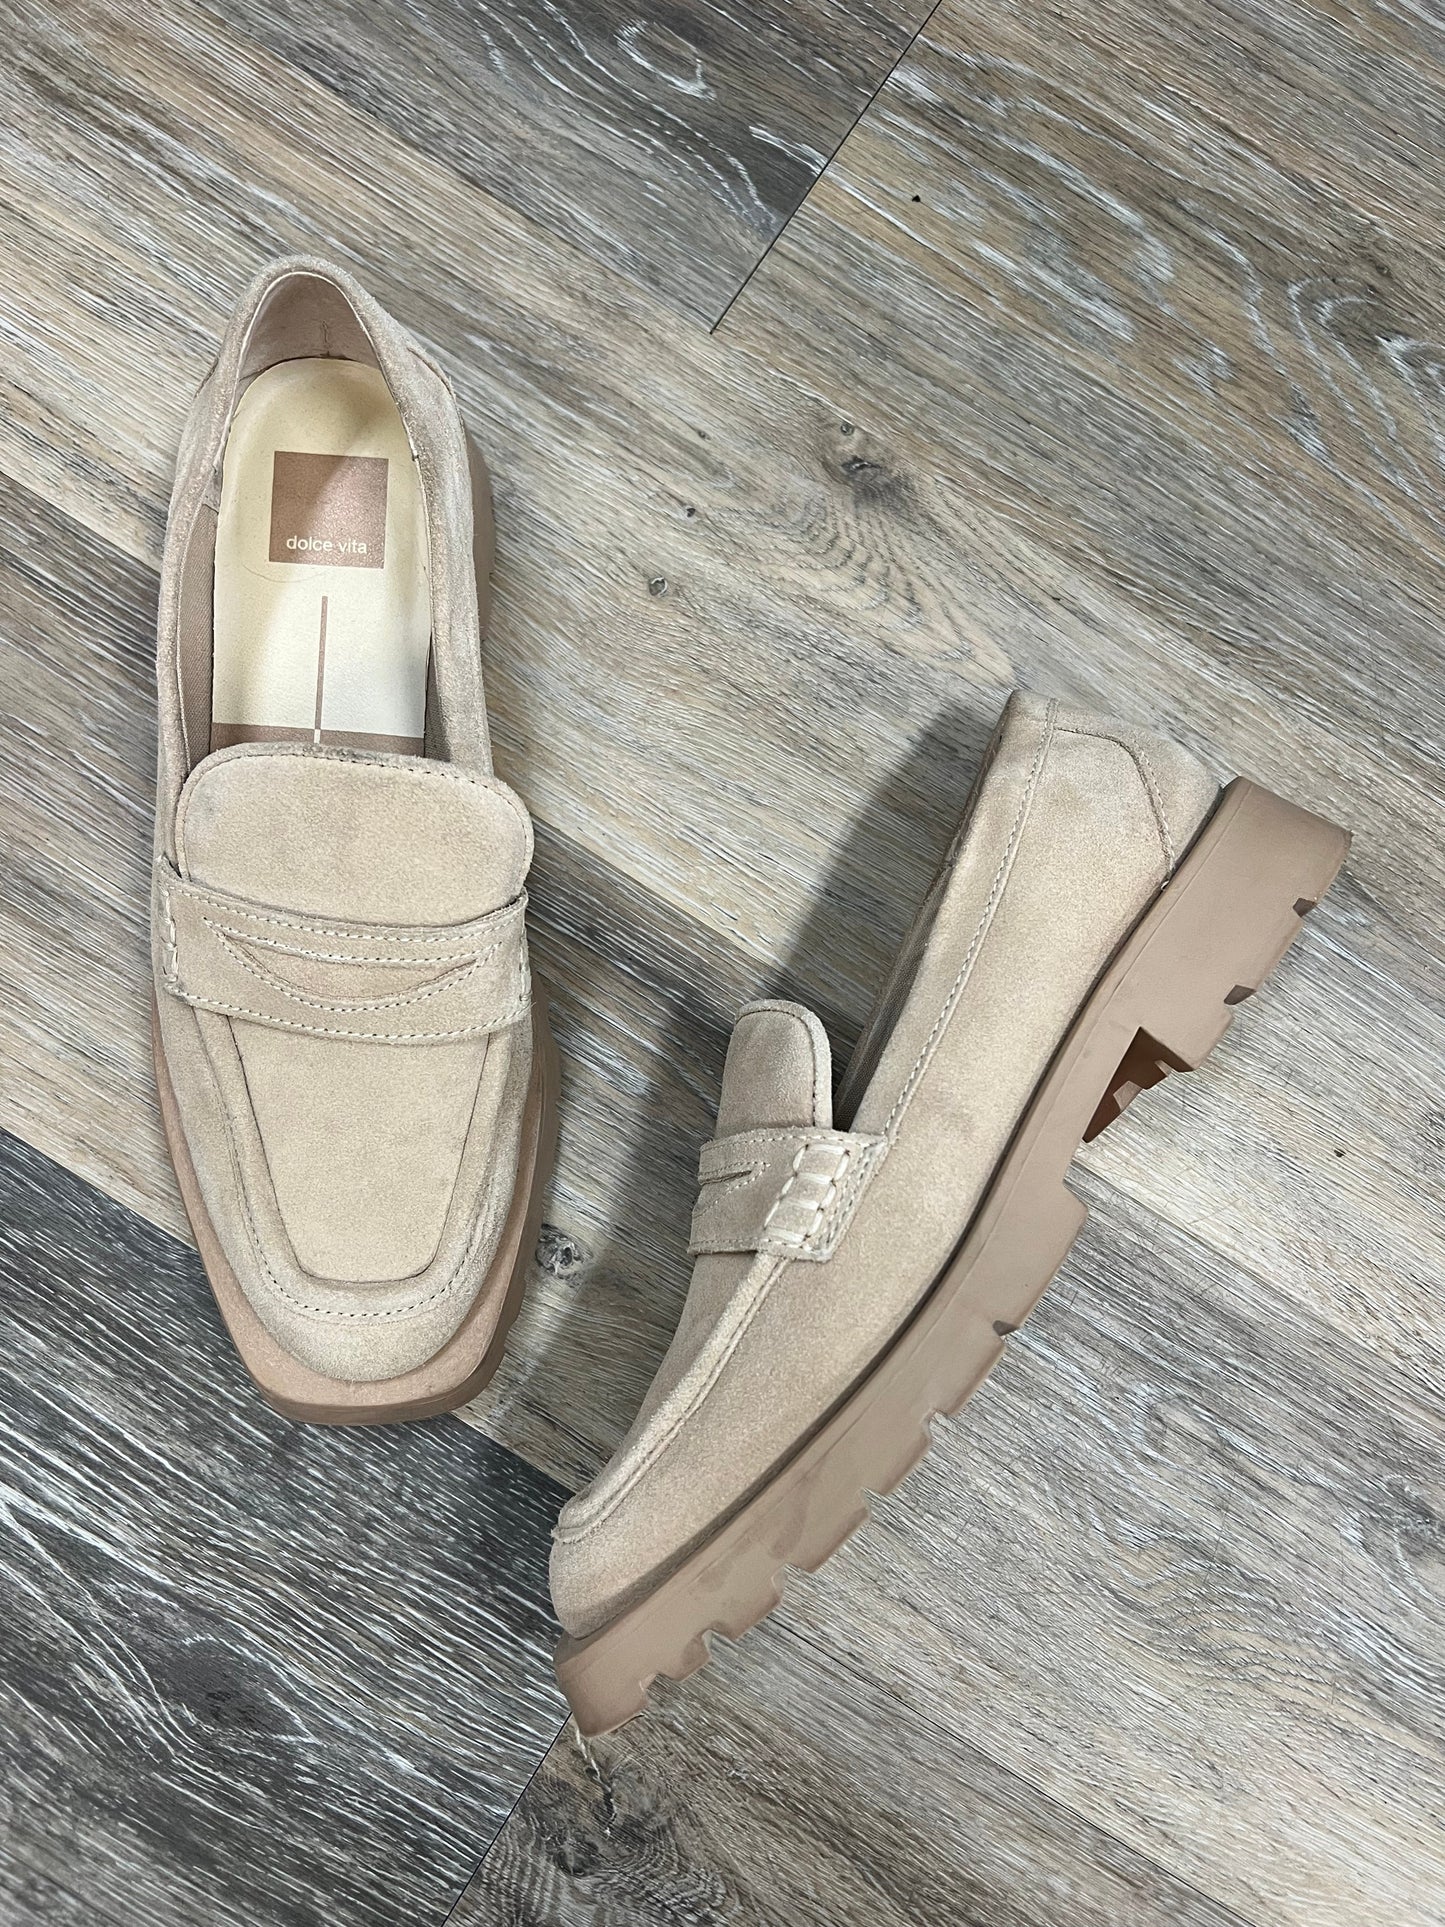 Tan Shoes Flats Dolce Vita, Size 8.5